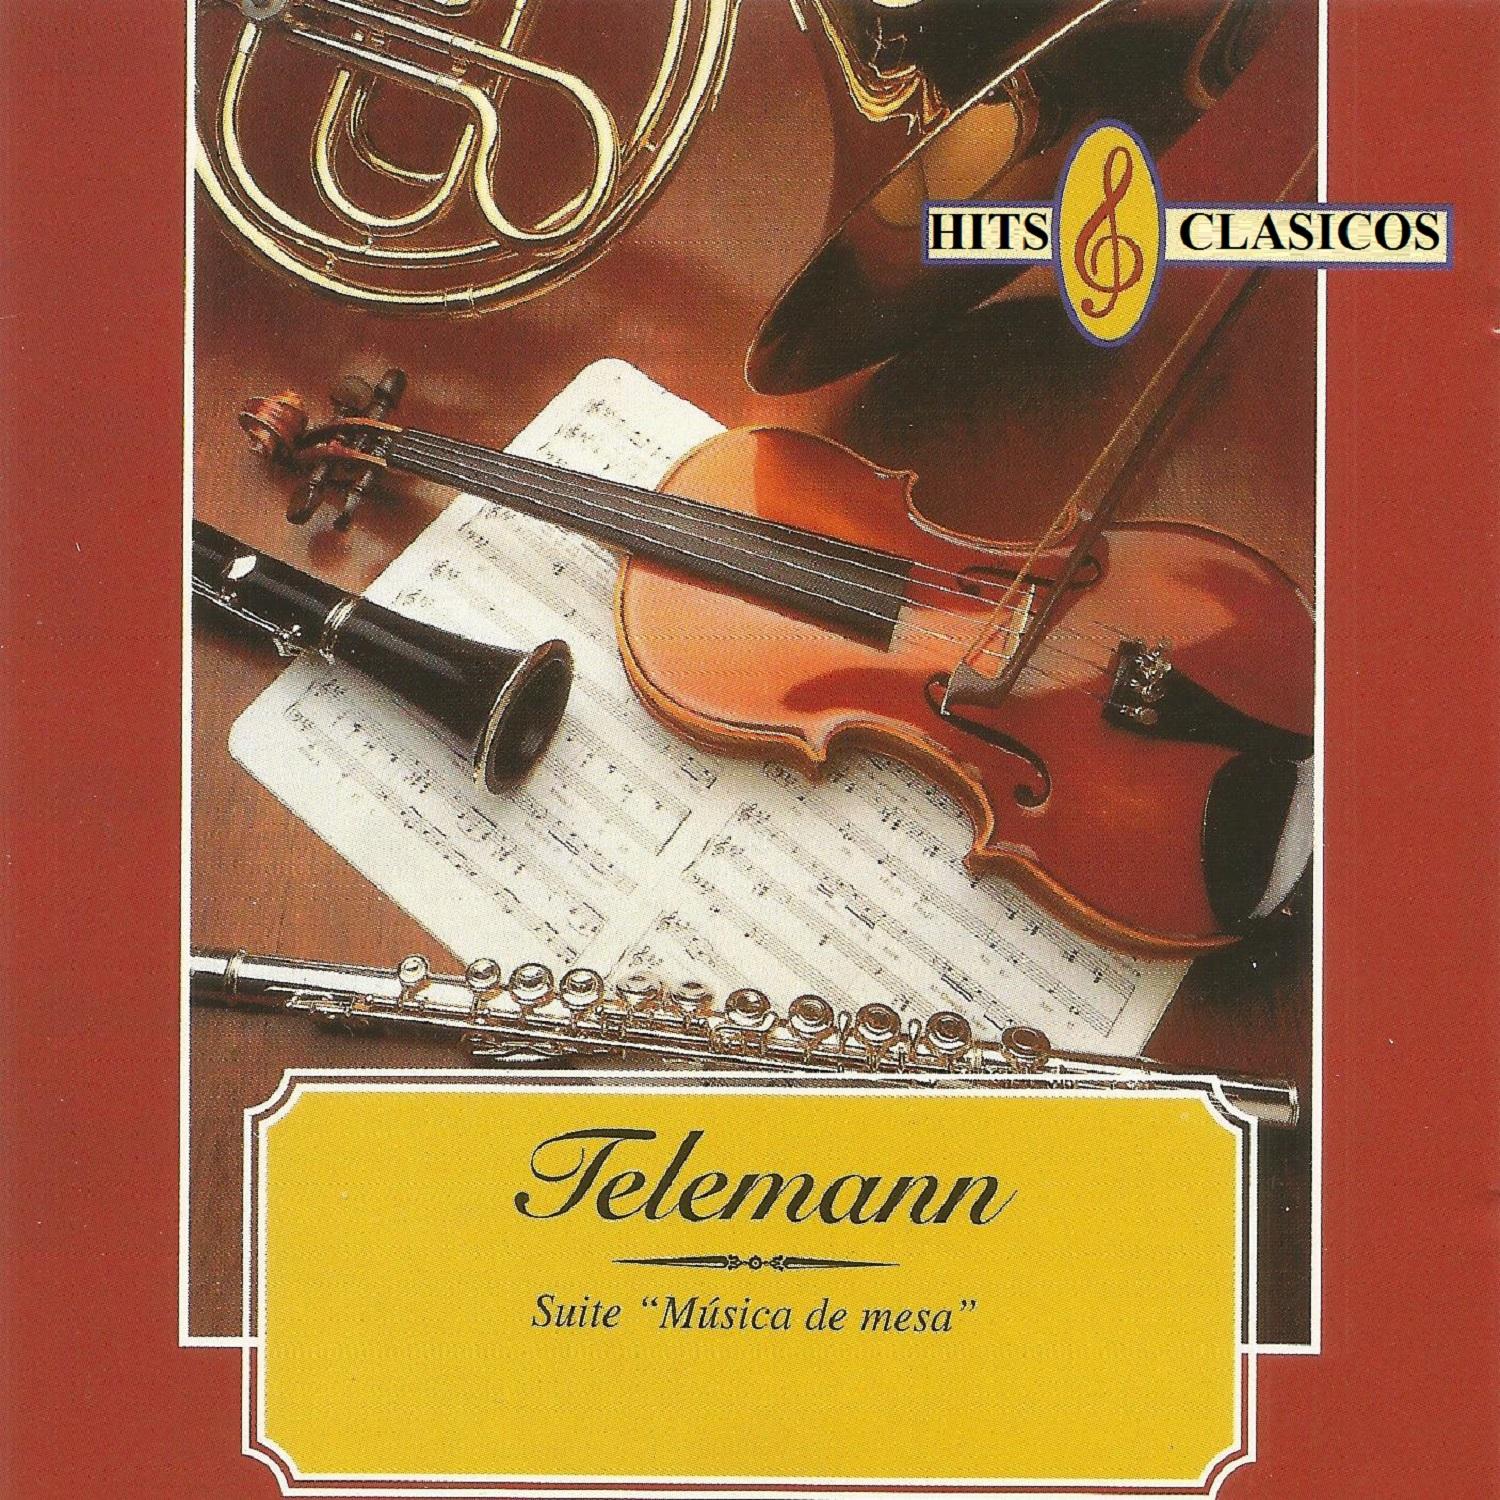 Hits Clasicos - Telemann